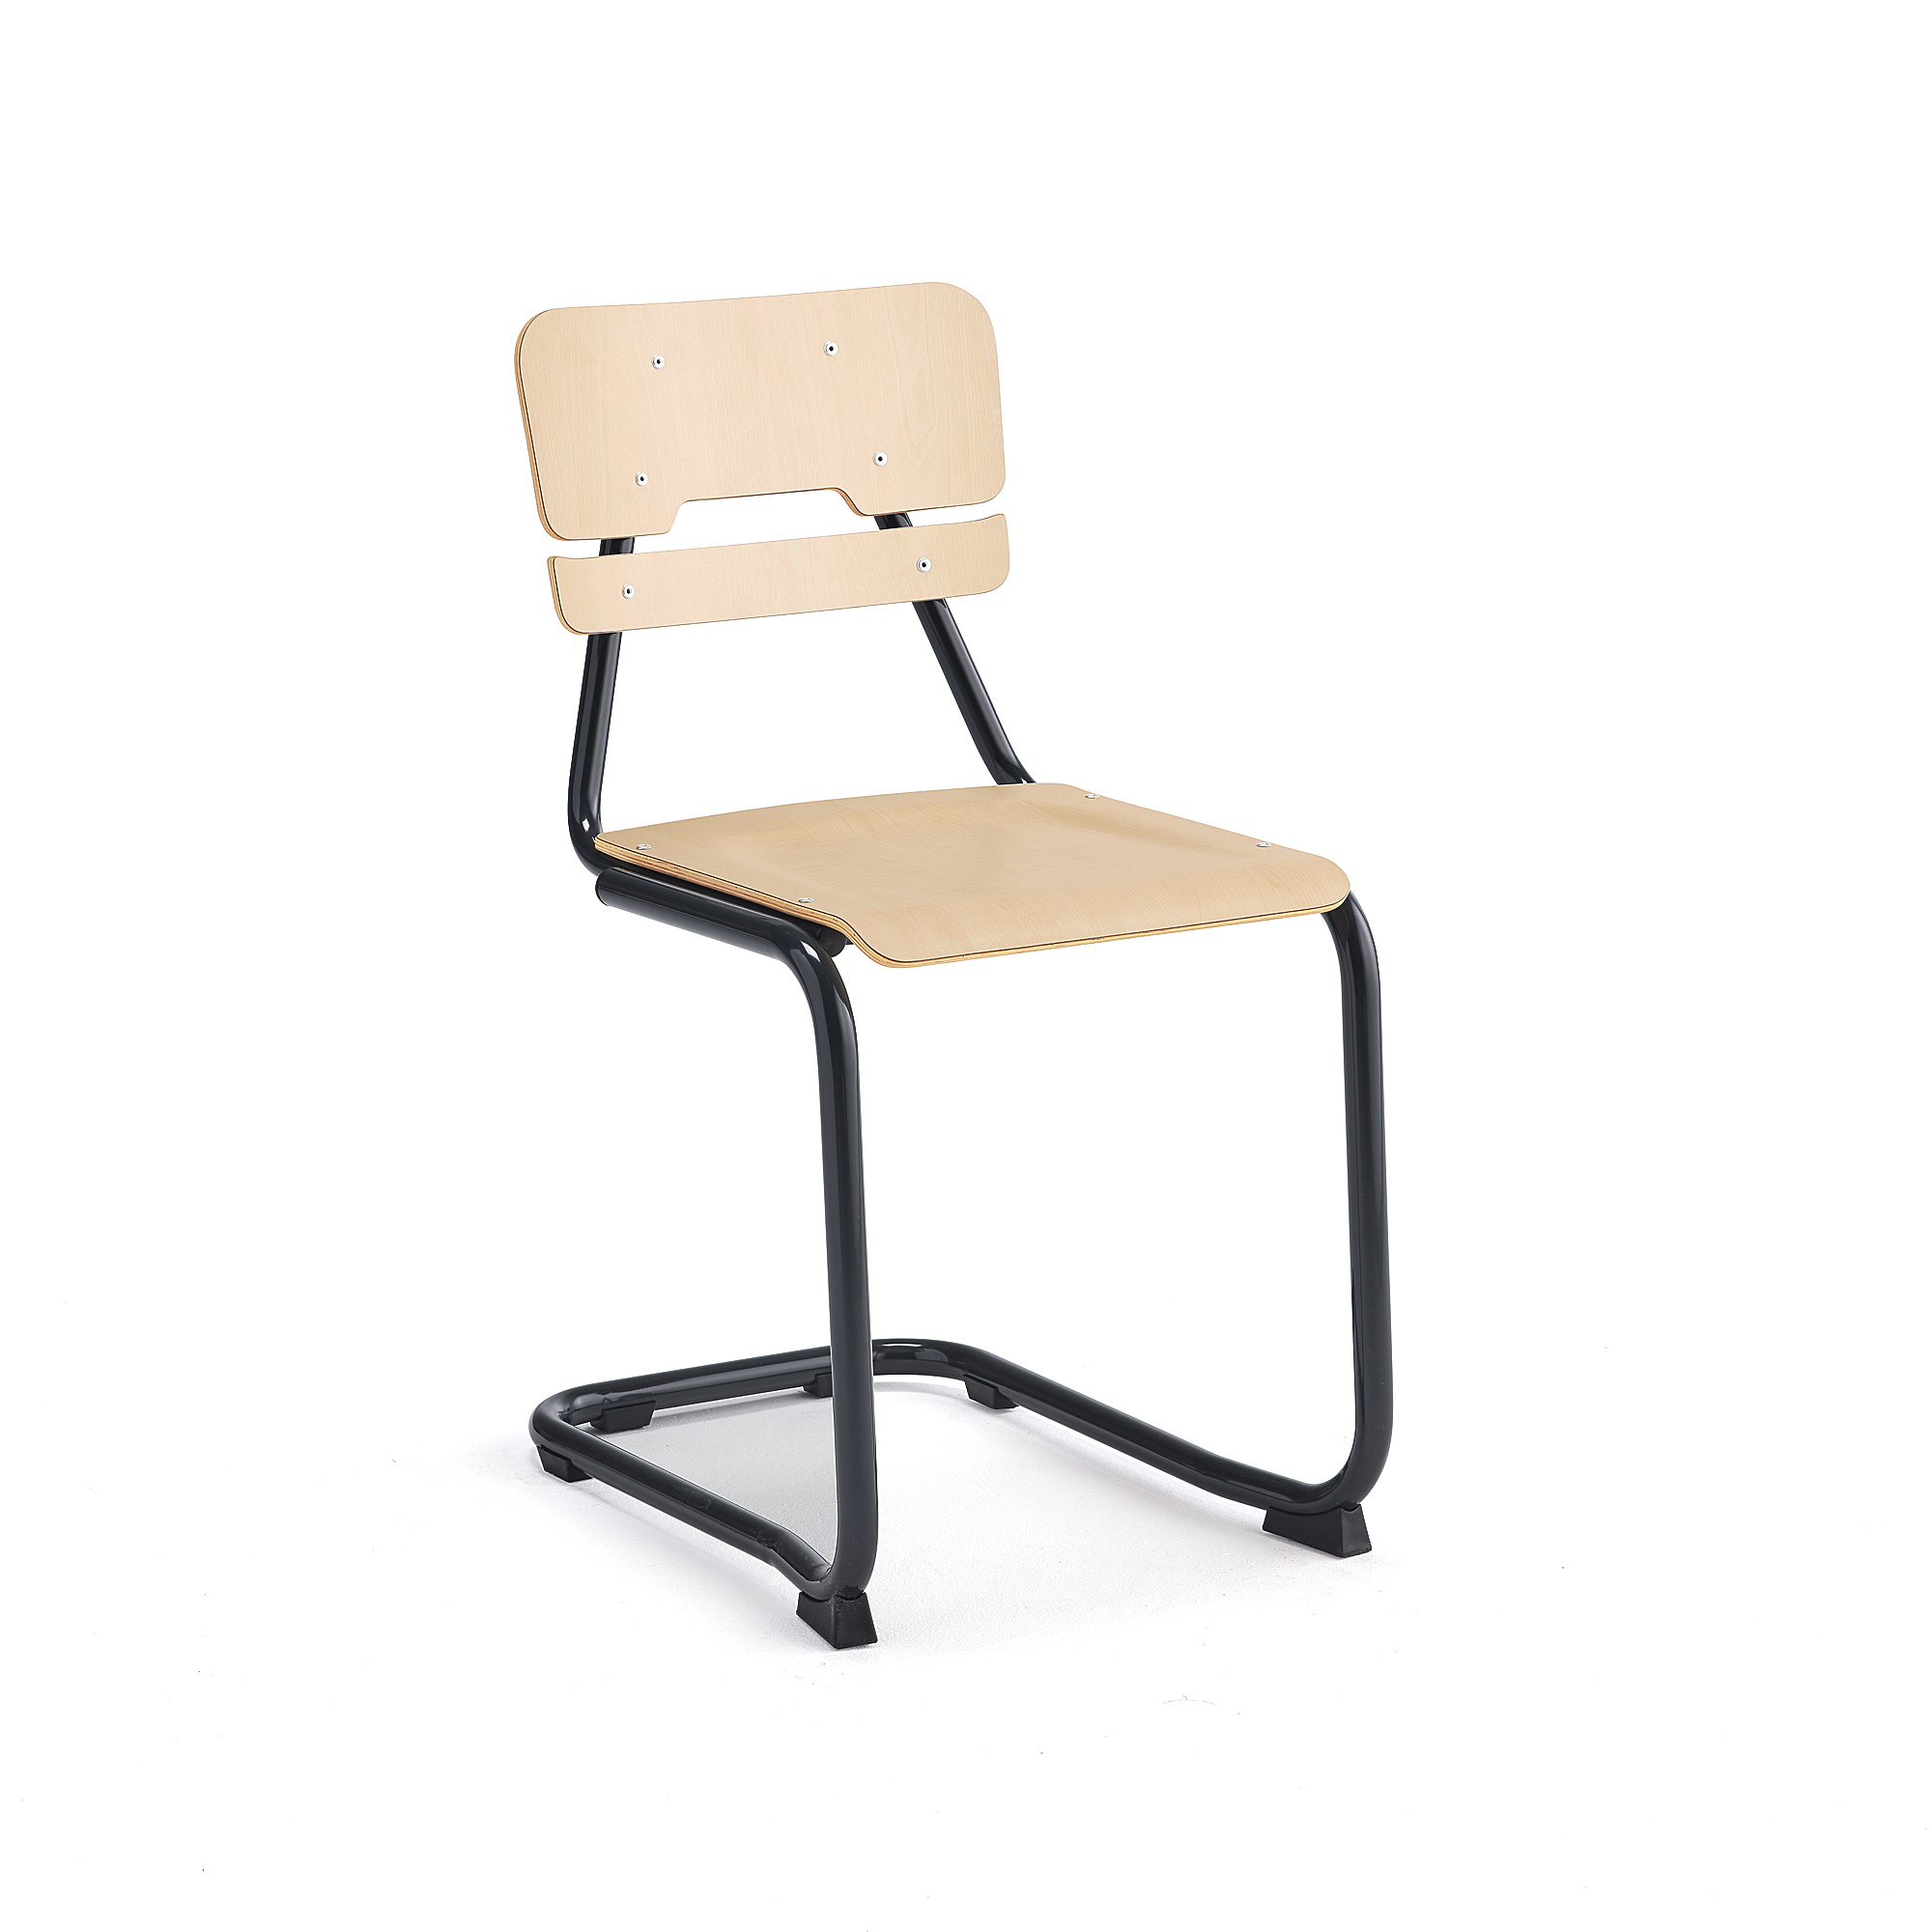 Školní židle LEGERE I, výška 450 mm, antracitově šedá, bříza